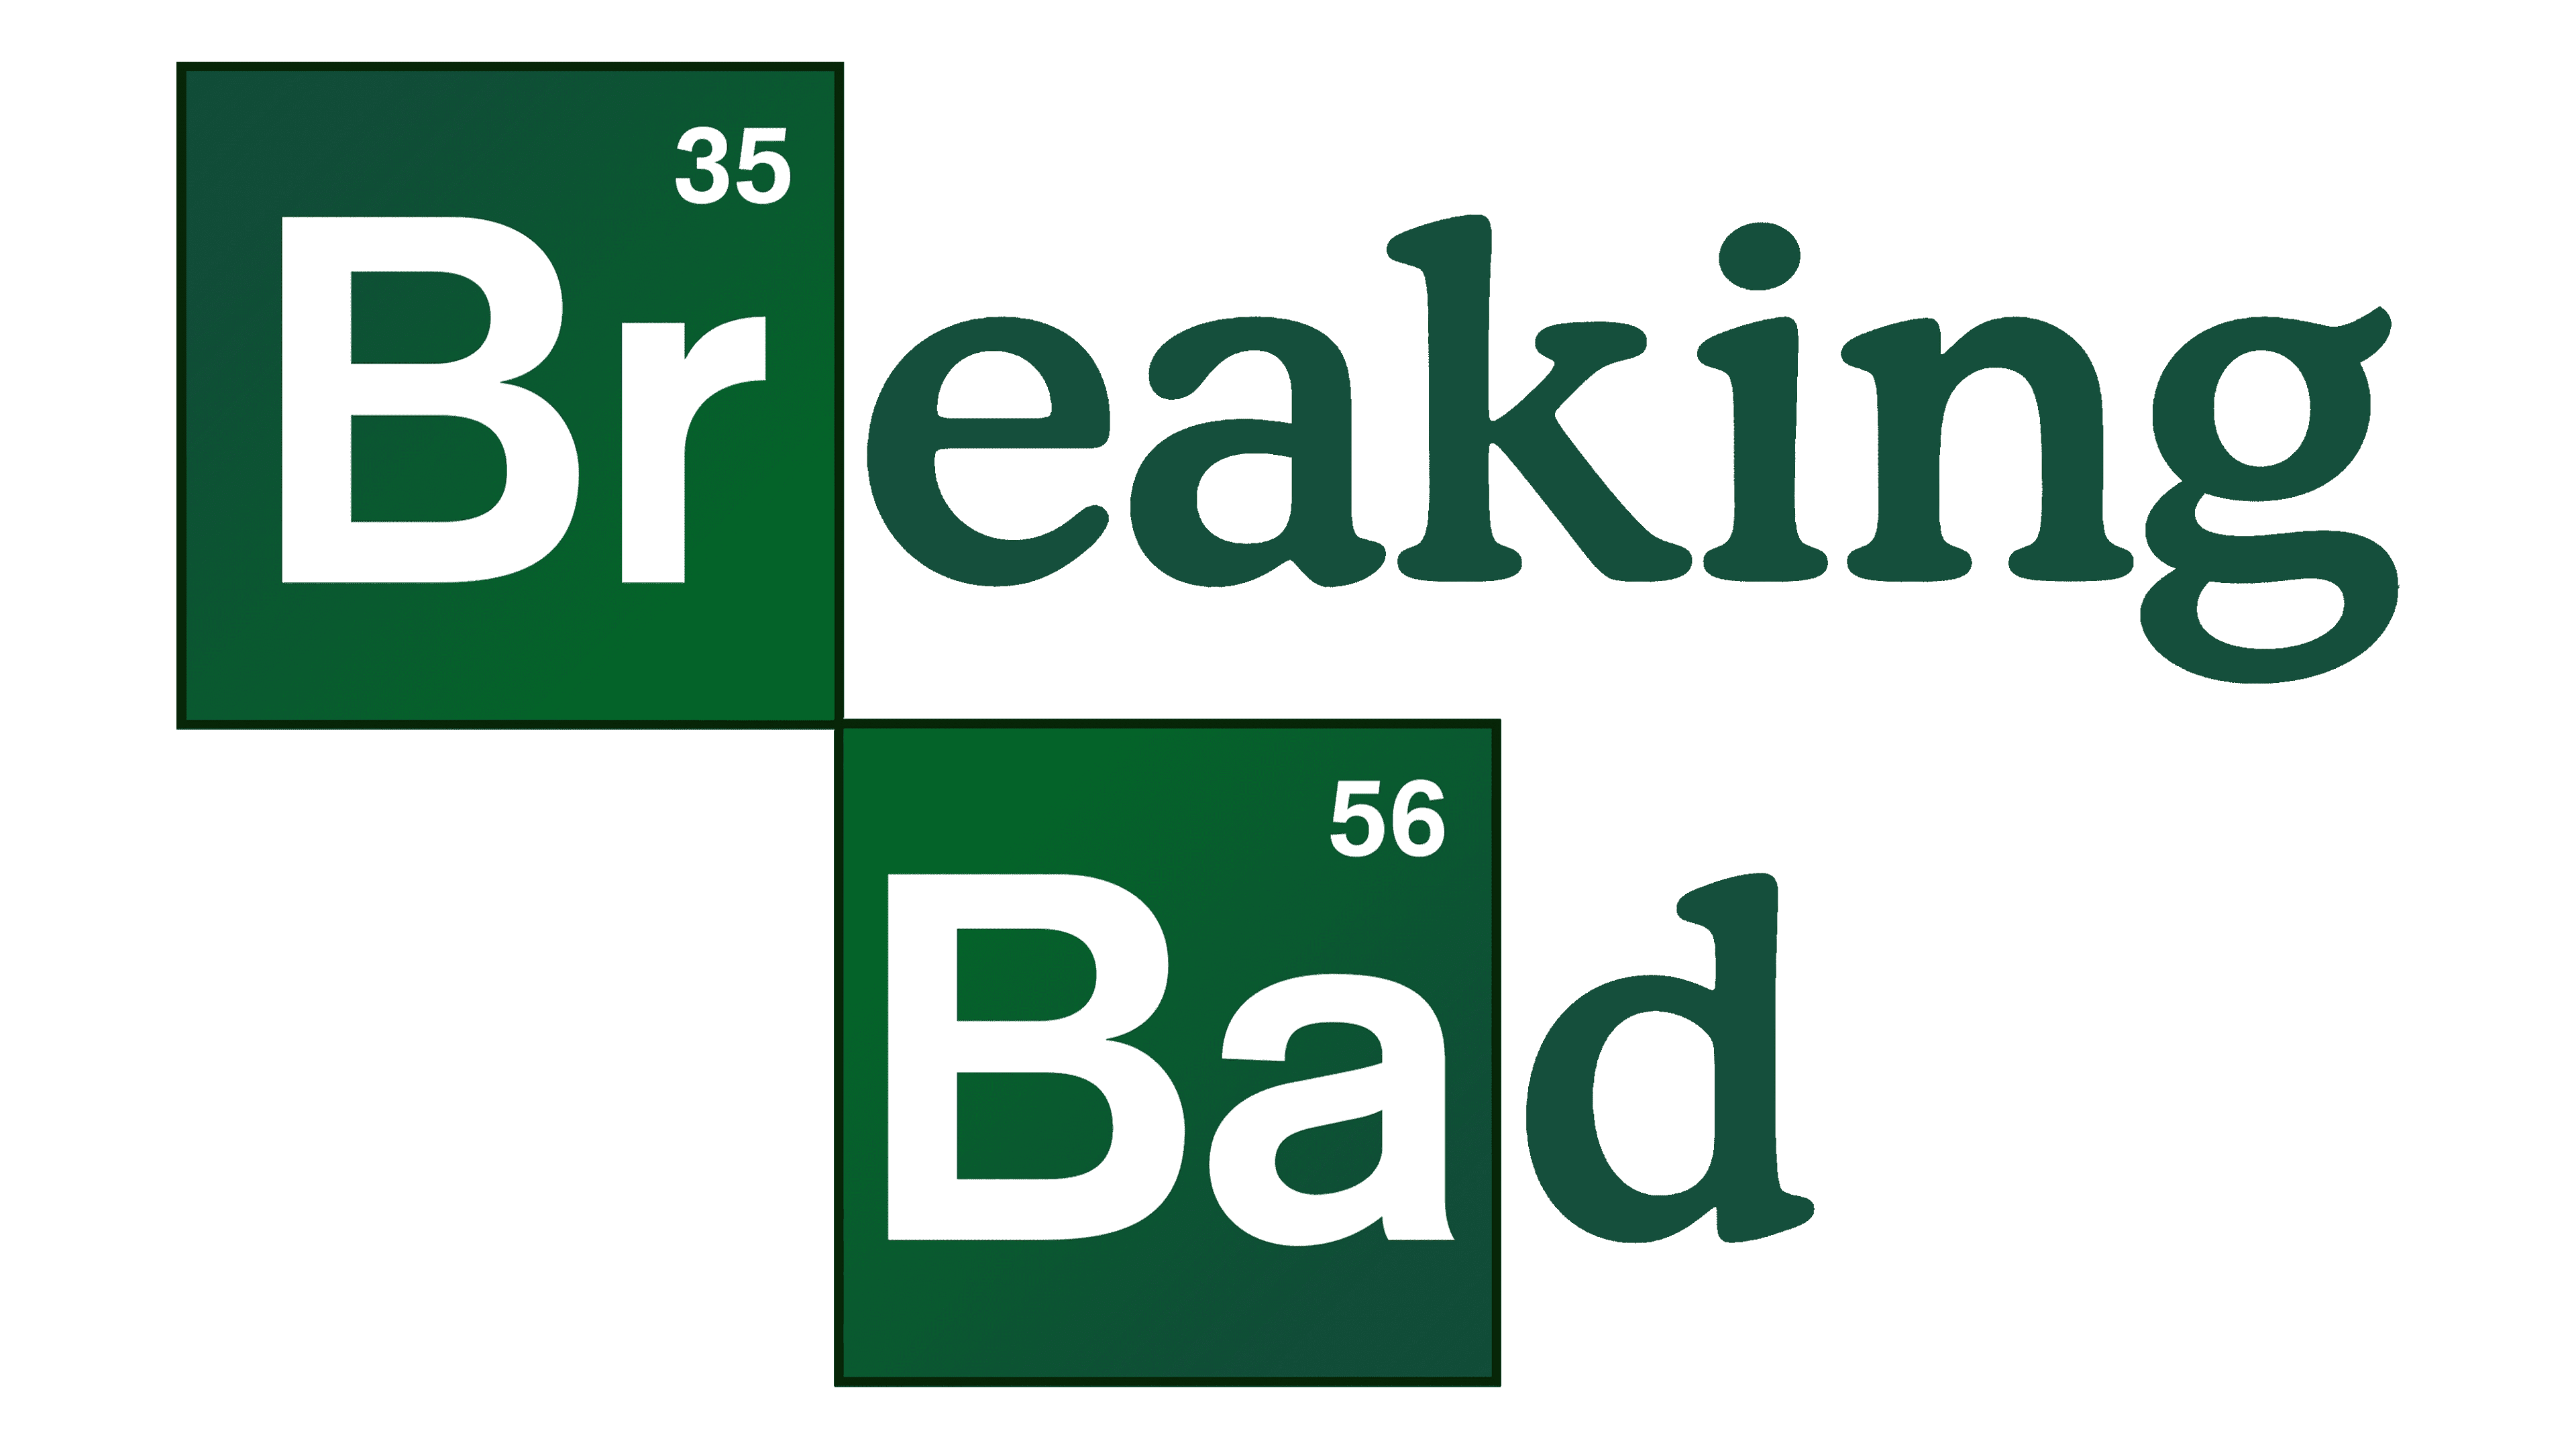 Breaking Bad Logo Logo